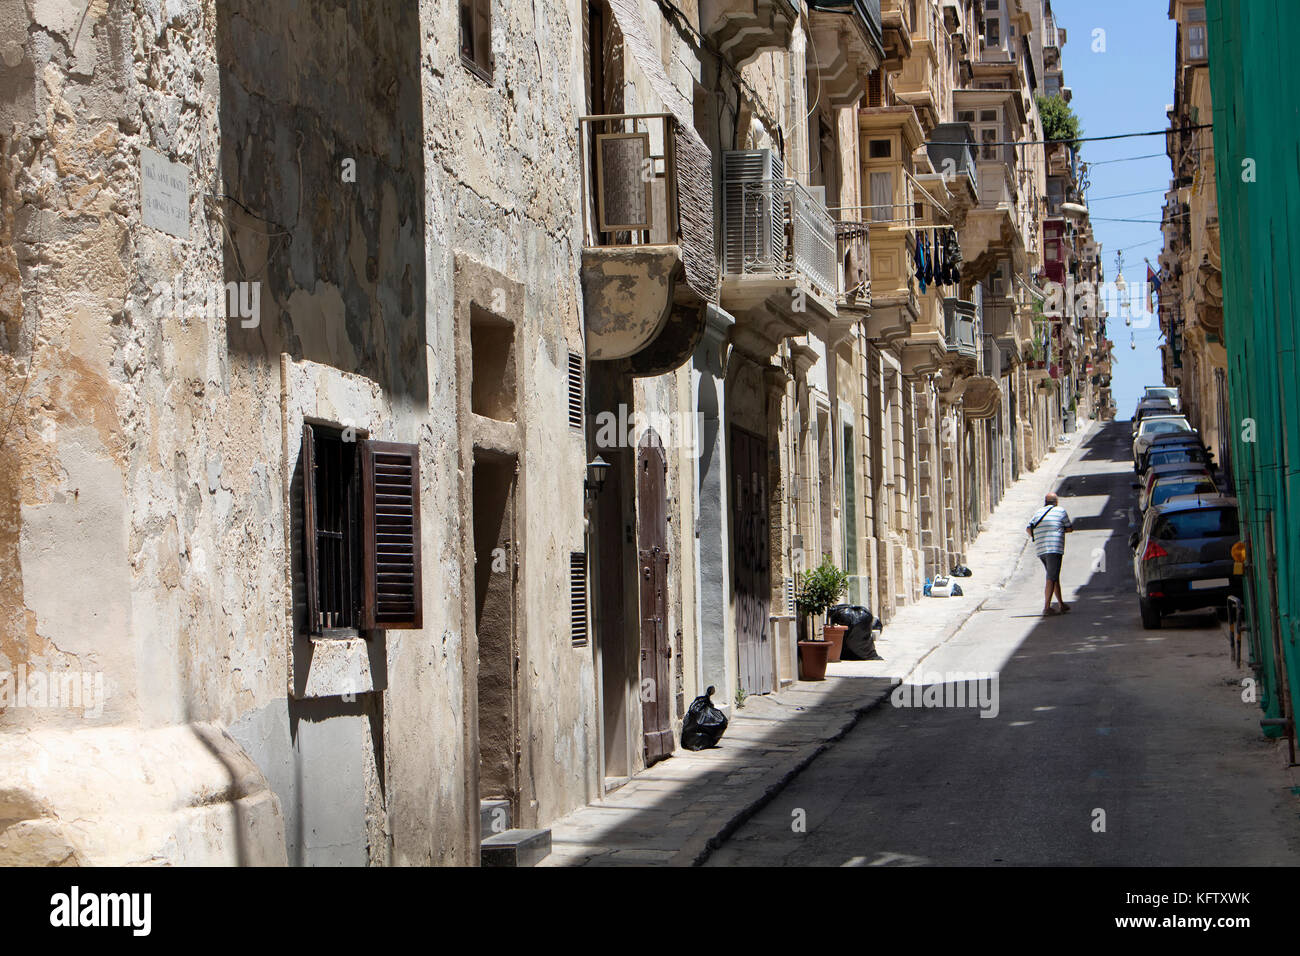 Uno dei vecchi, strade storiche a la valletta / malta. immagine mostra lo stile architettonico della città e stile di vita che è la capitale del mediterrane Foto Stock